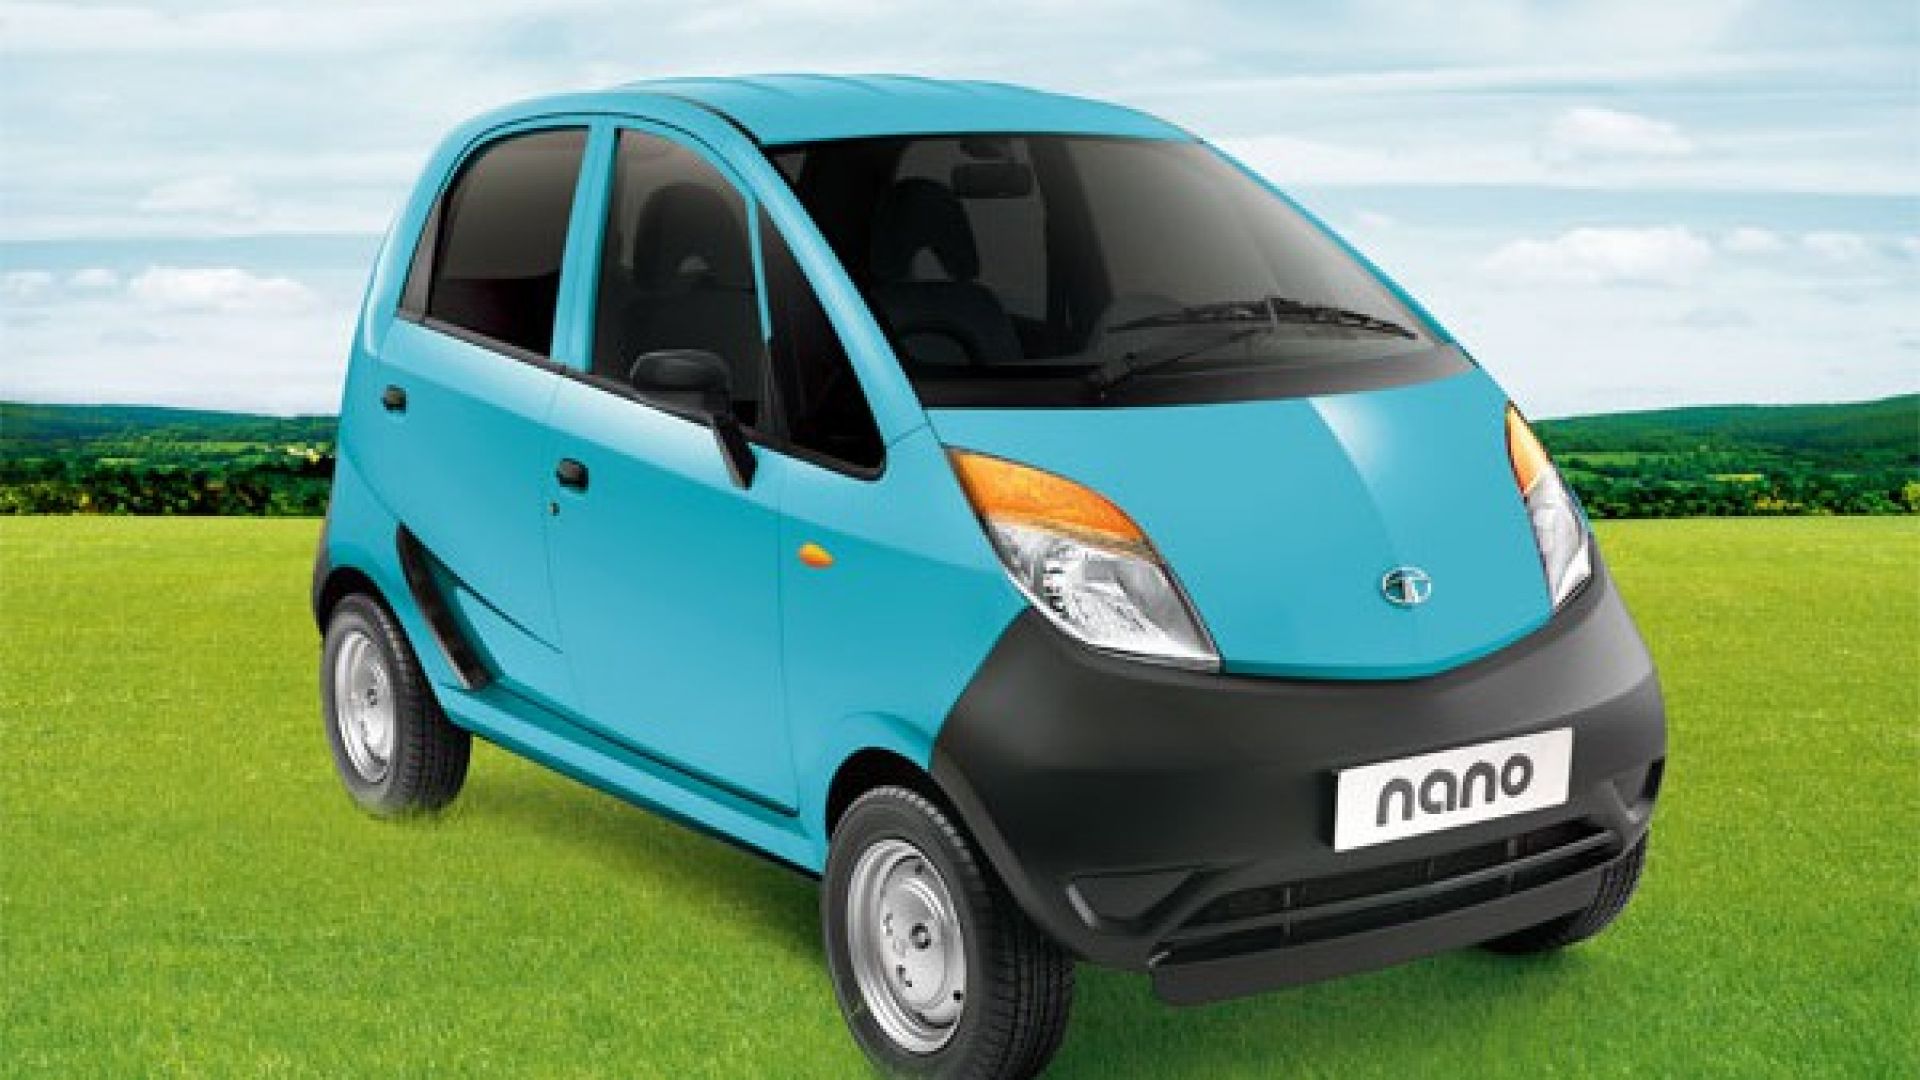 Купить дешевую иномарку. Tata Nano. Машина Tata Nano. Тата Индия авто. Малолитражки Tata.